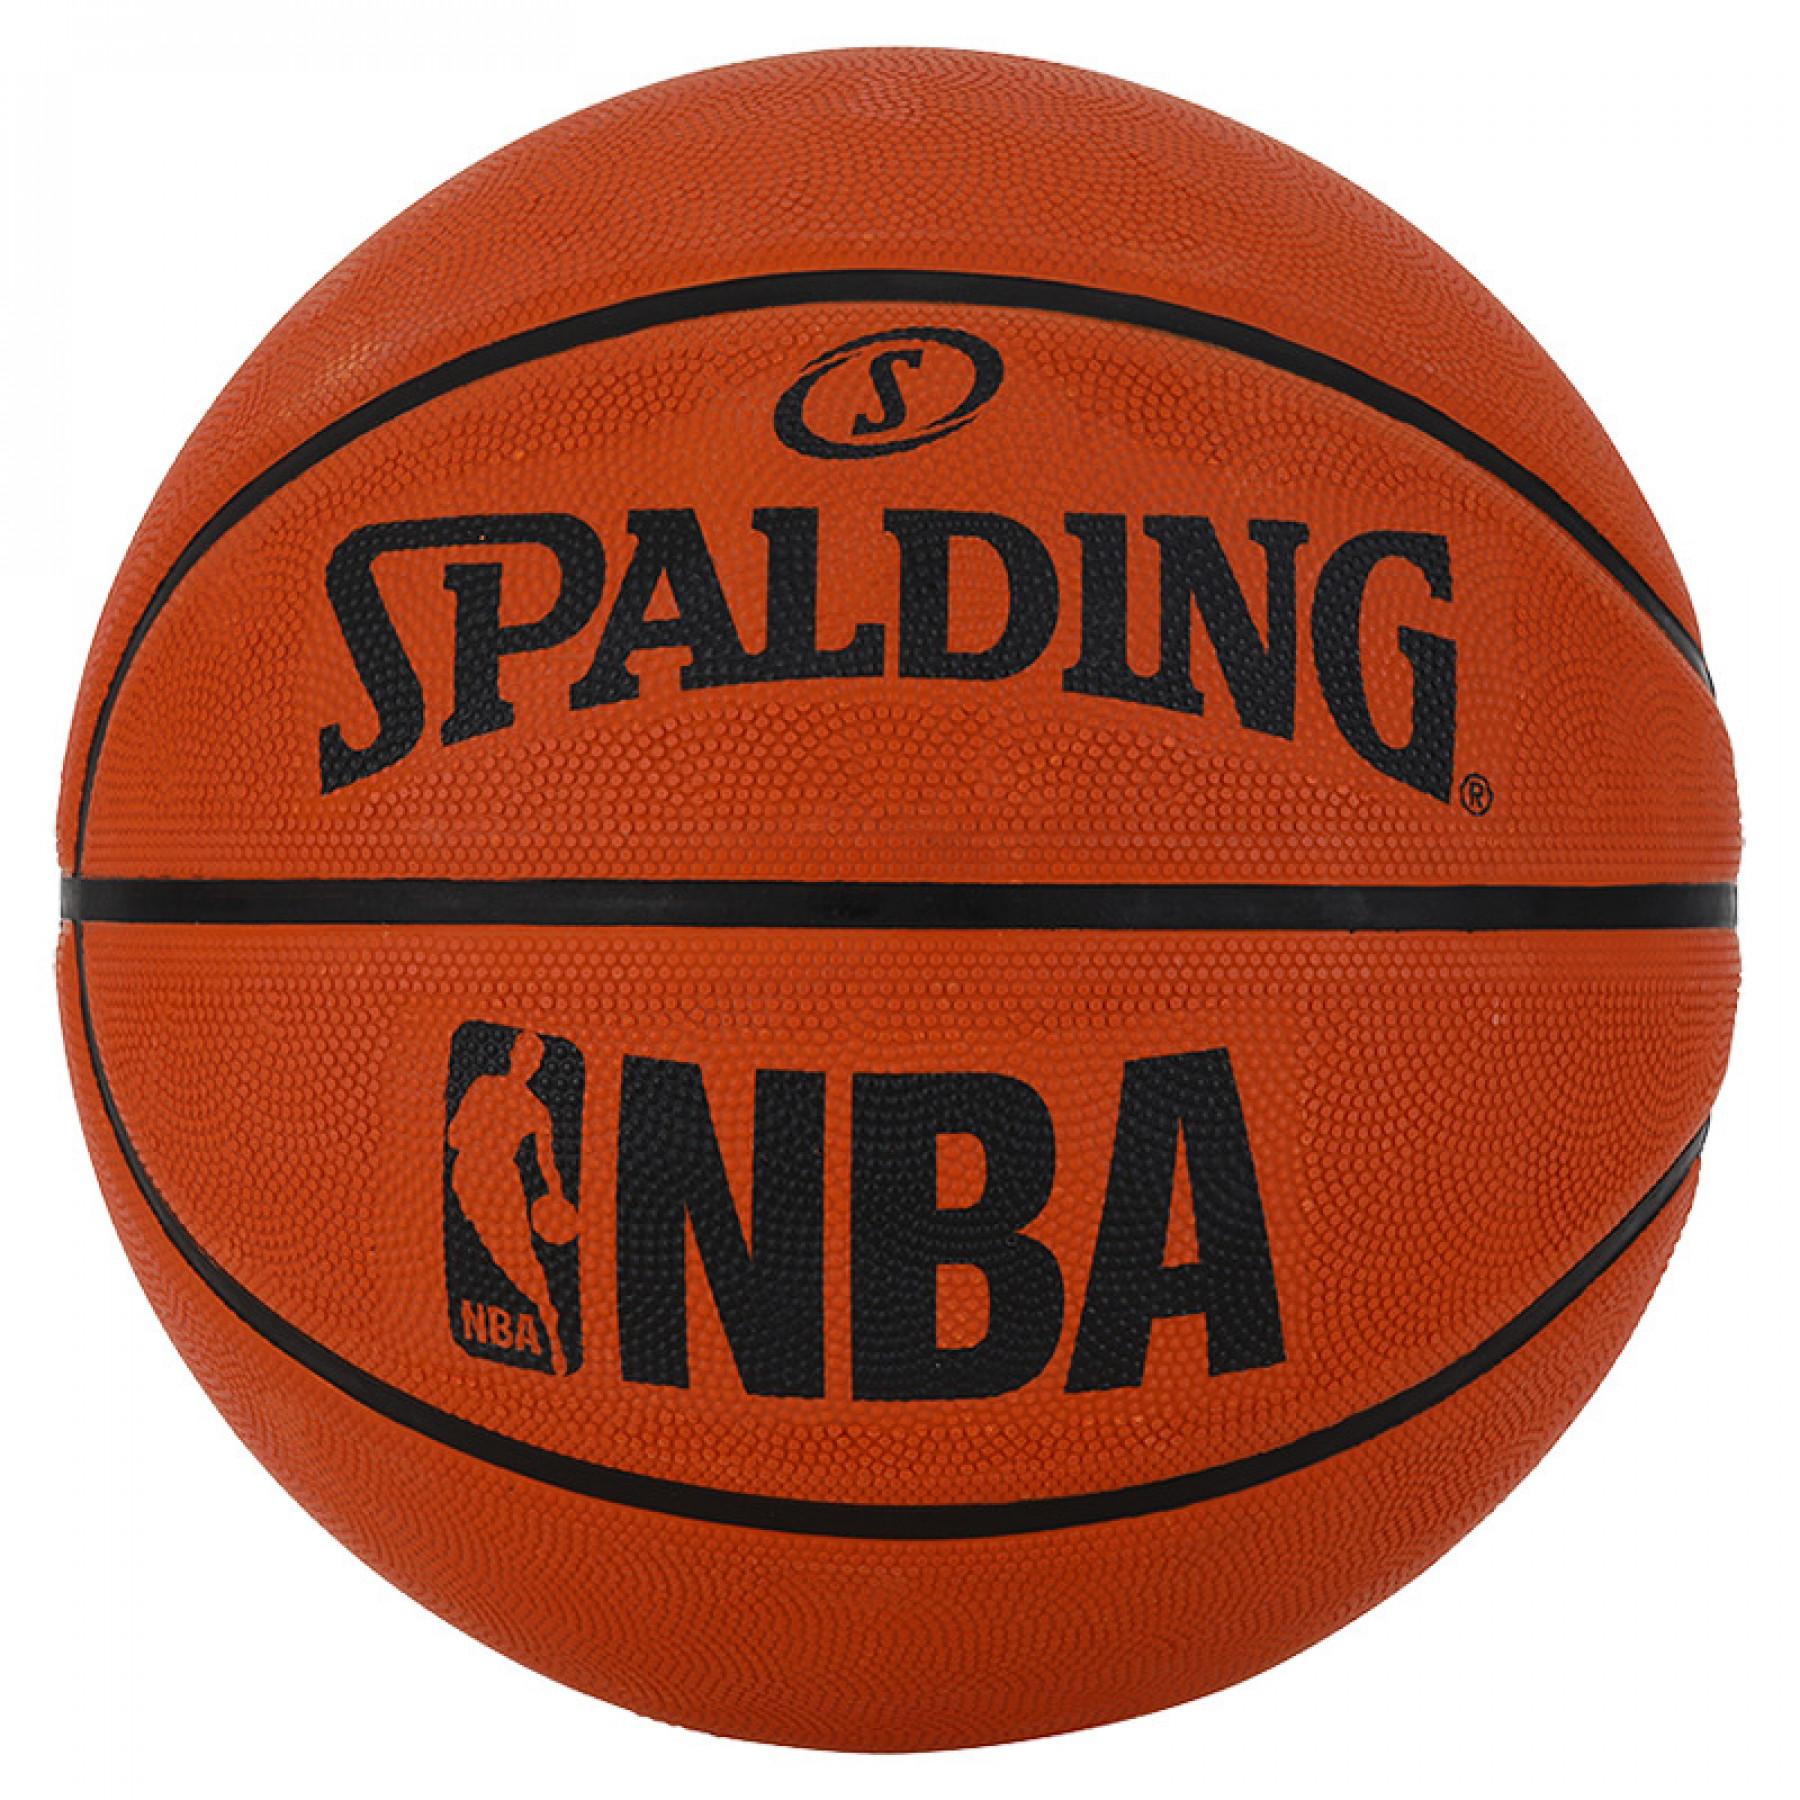 Balloon Spalding NBA (71-047z)